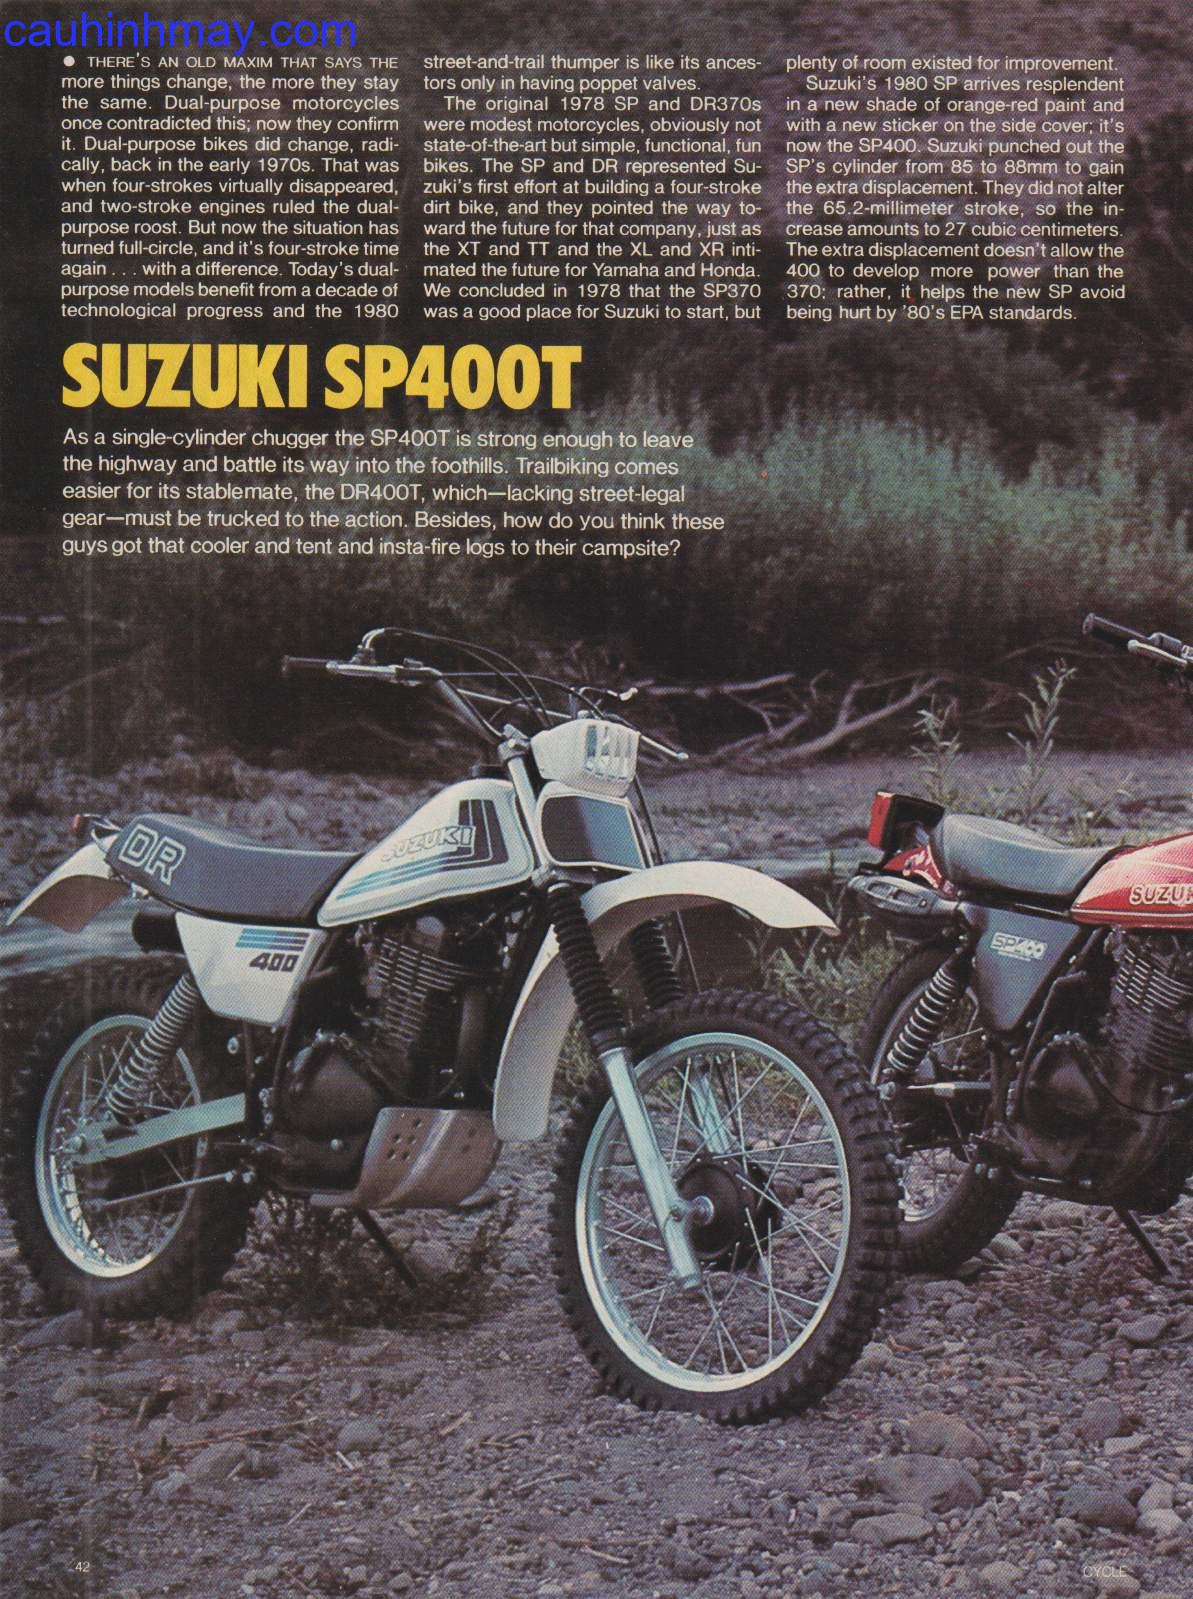 1980  SUZUKI SP 400T - cauhinhmay.com